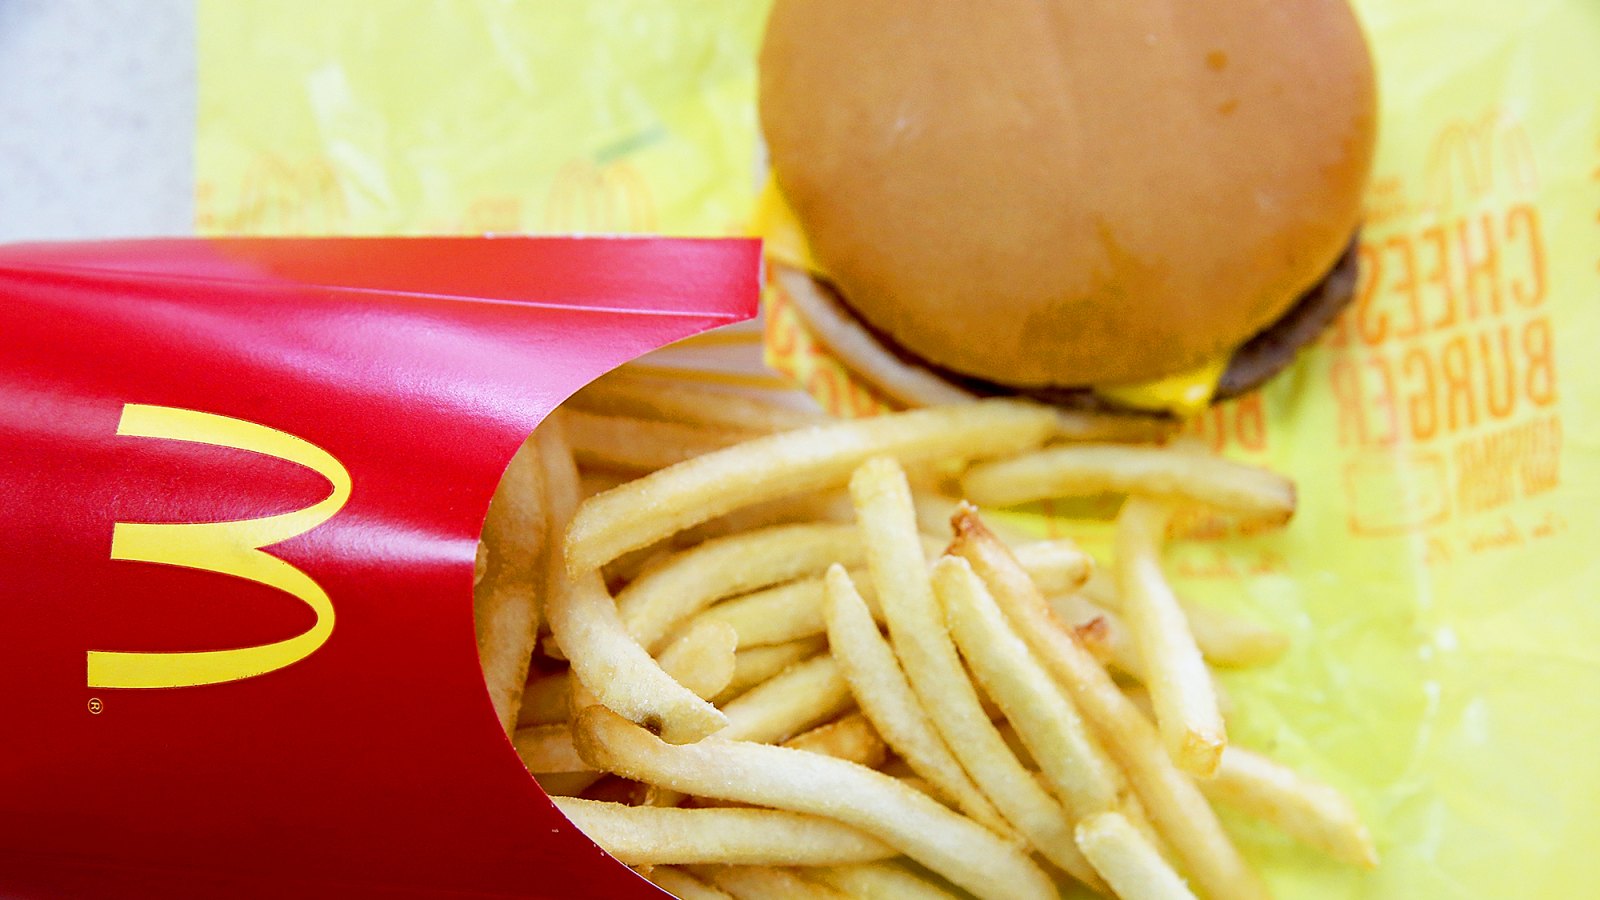 McDonald's cheeseburger and fries